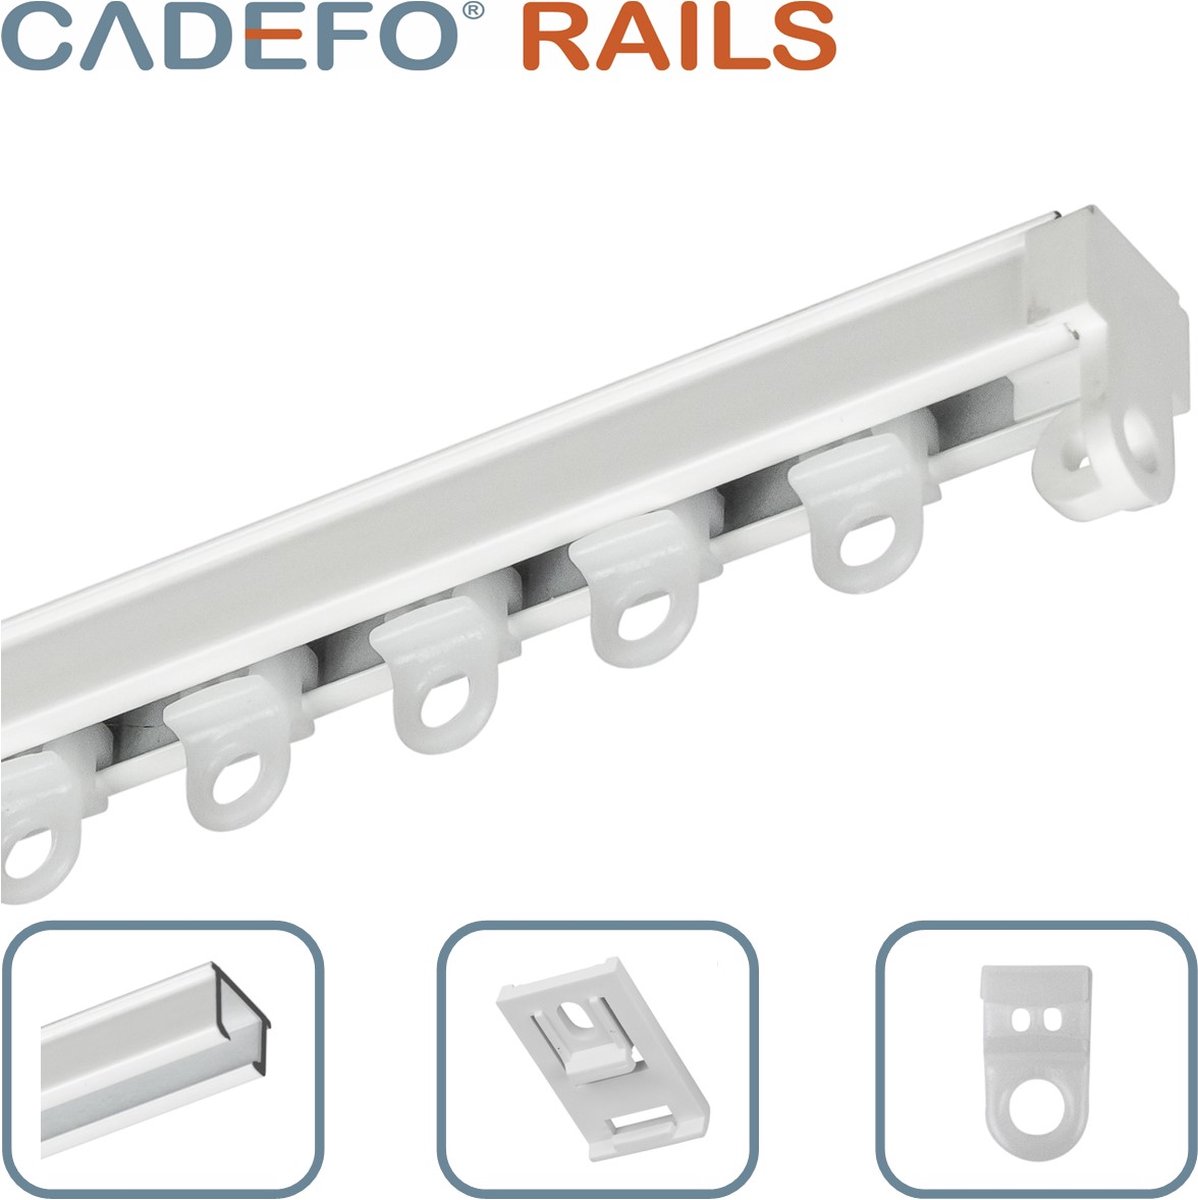 CADEFO RAILS (301 - 350 cm) Gordijnrails - Compleet op maat! - UIT 1 STUK - Leverbaar tot 6 meter - Plafondbevestiging - Lengte 345 cm